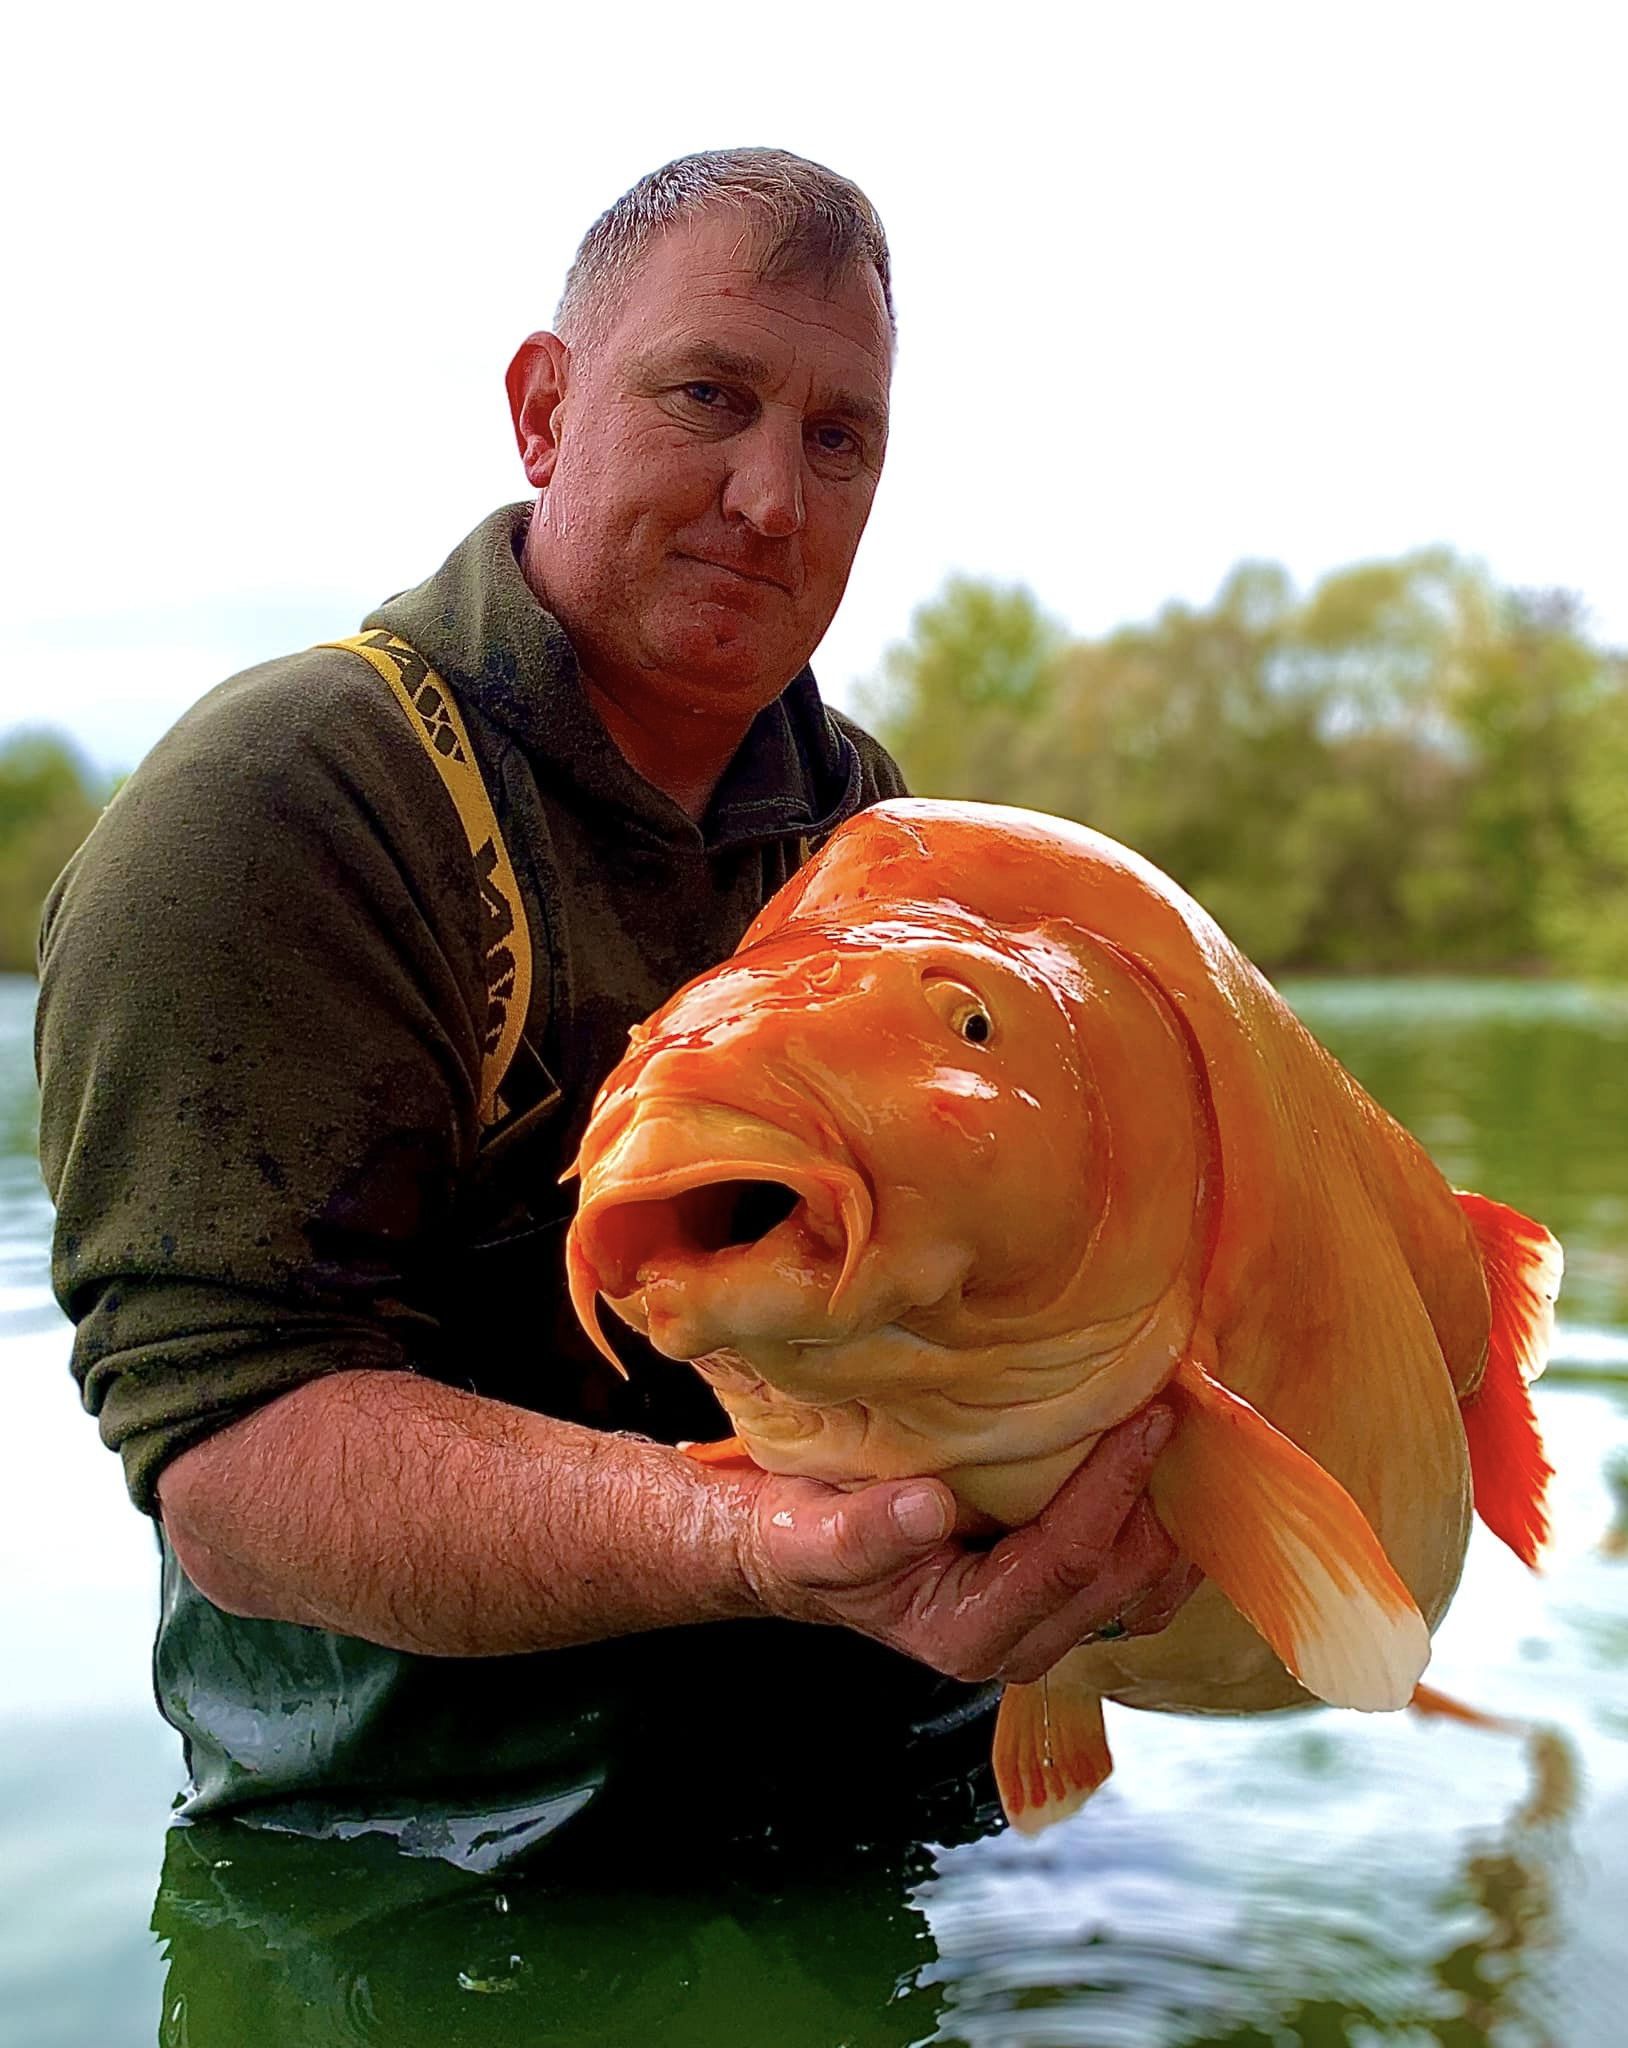 鯉魚王現身！他釣到30公斤似「巨型金魚」　品種曝光綽號「紅蘿蔔」